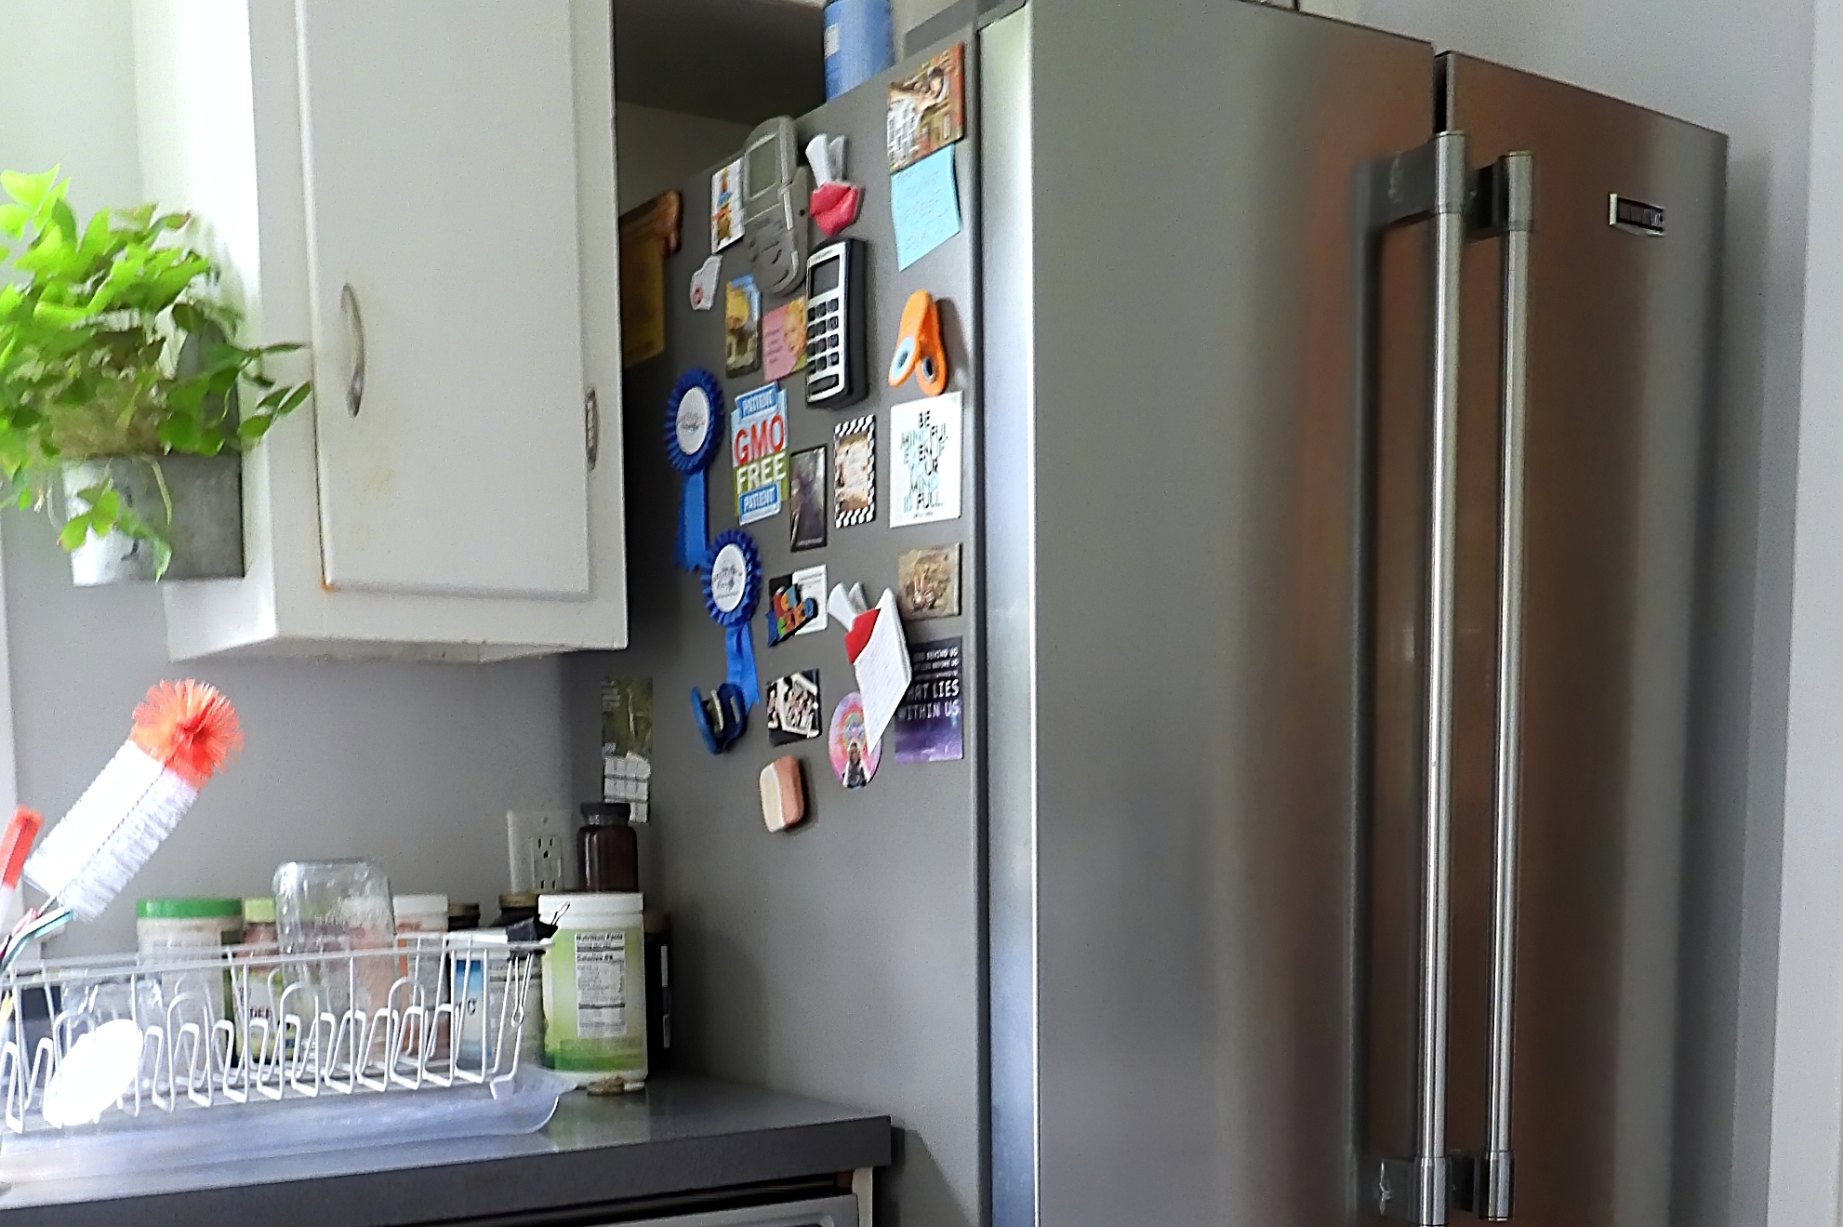 Что делать со старым холодильником? 12 идей - вторая жизнь холодильника